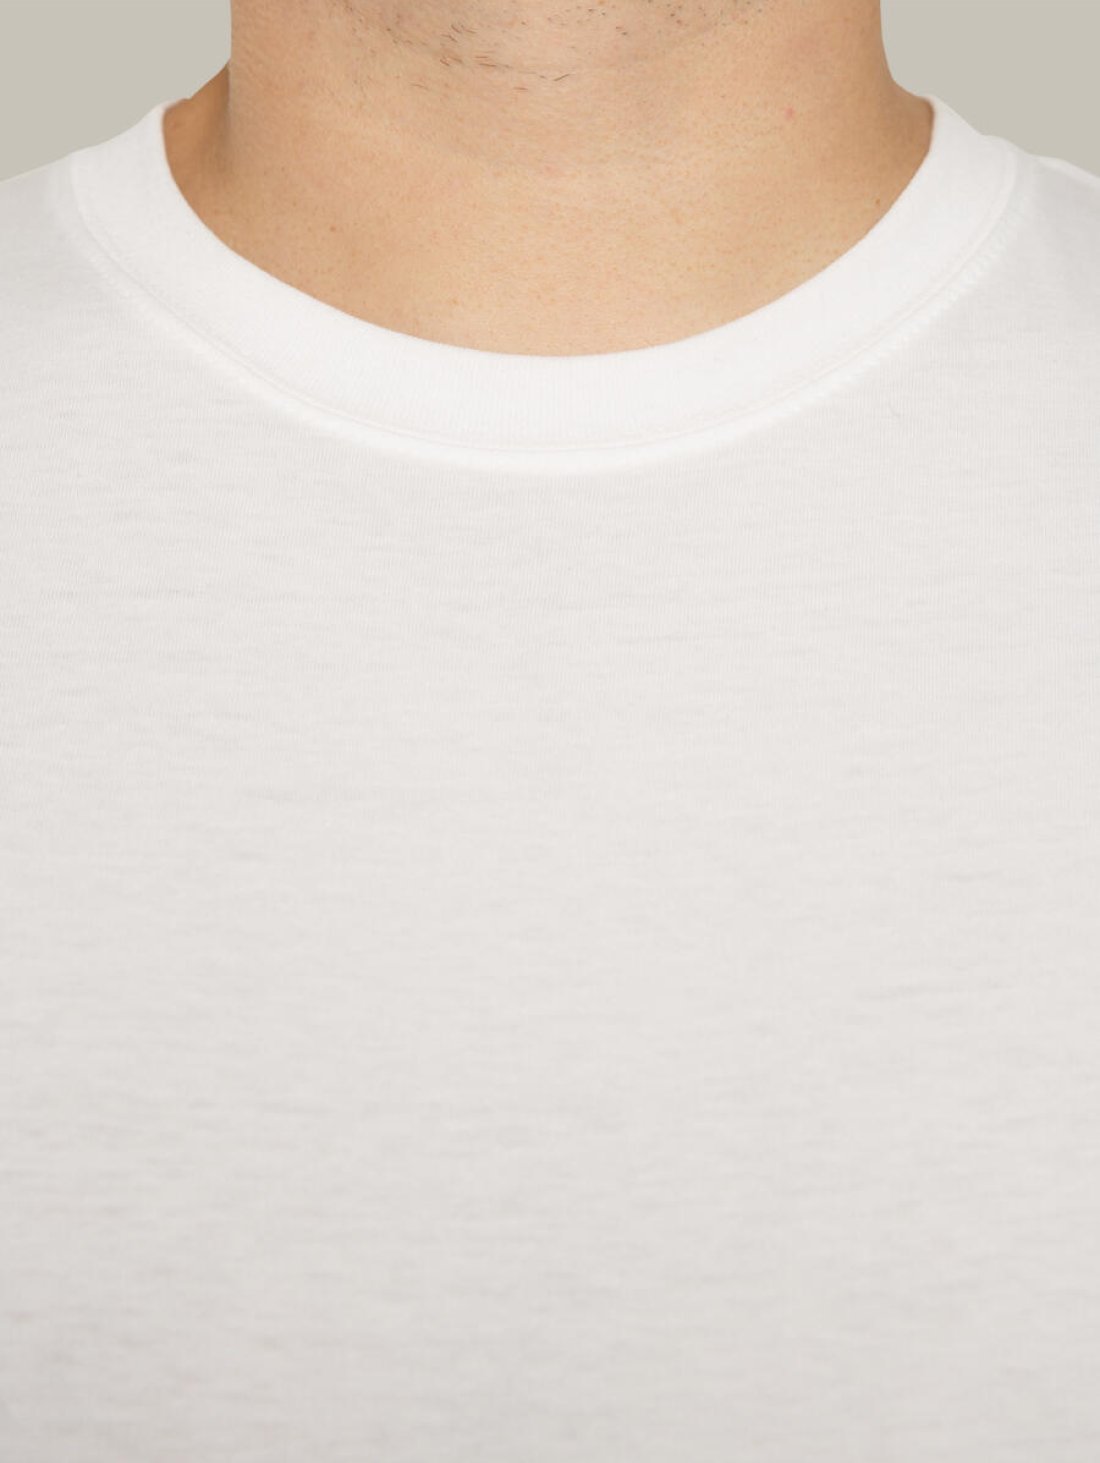 Чоловіча футболка, біла з принтом аватара Hopper 034